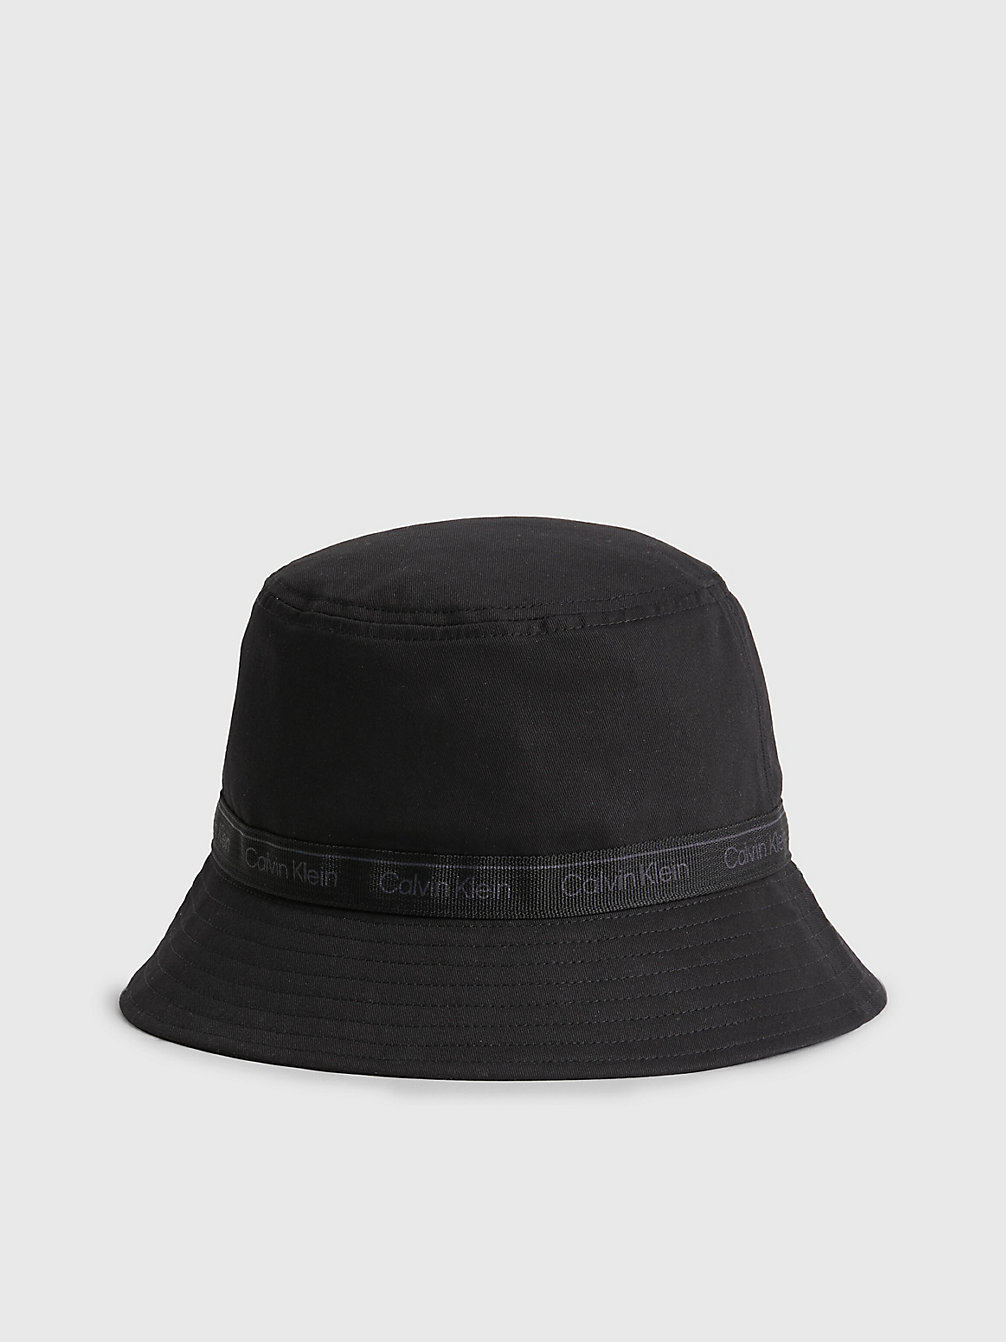 CK BLACK > Kapelusz Typu Bucket Hat Z Bawełny Organicznej > undefined Kobiety - Calvin Klein